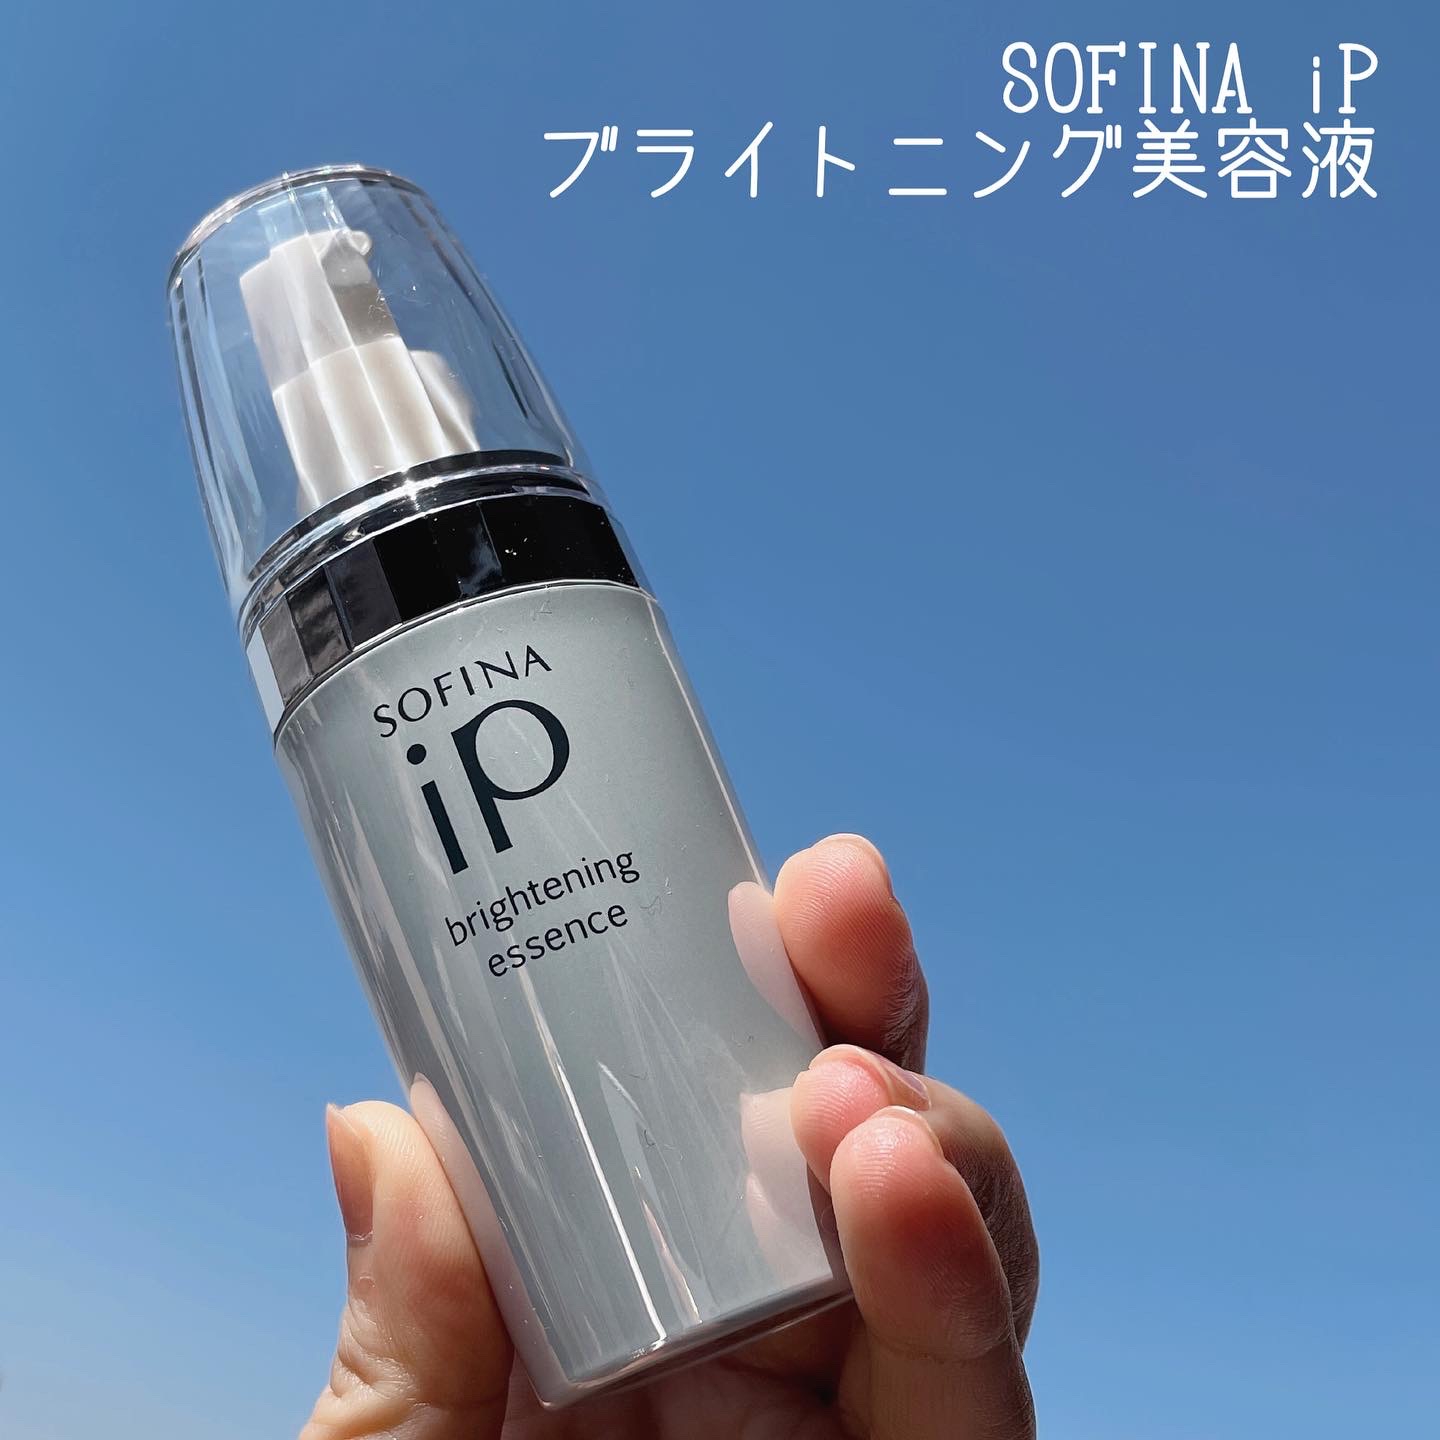 SOFINA iP(ソフィーナ アイピー) ブライトニング美容液の良い点・メリットに関するなゆさんの口コミ画像1